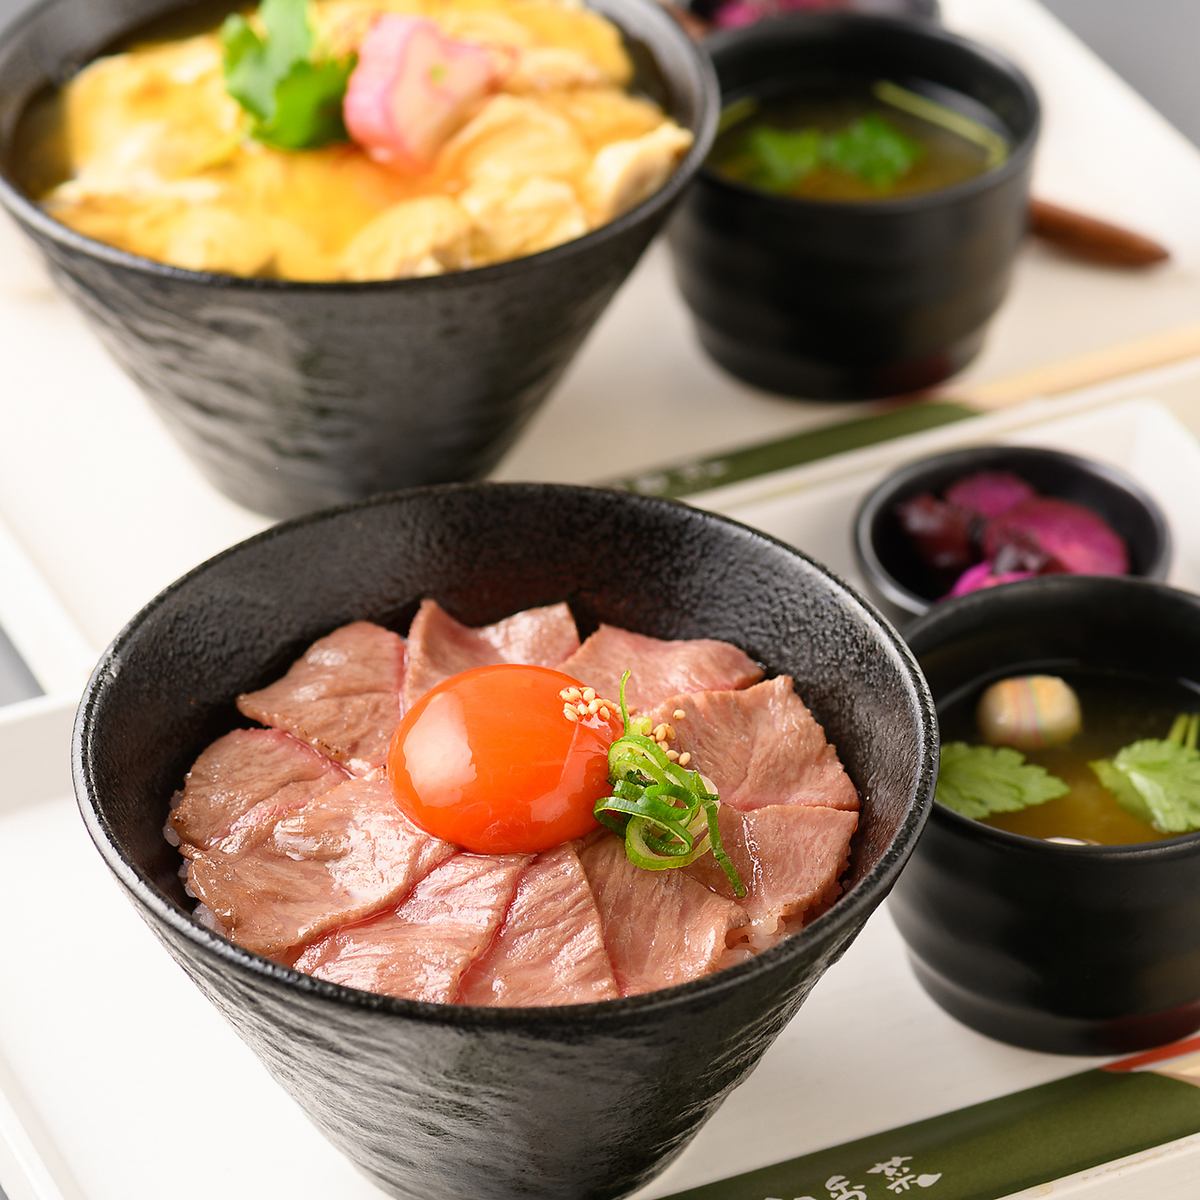 교토의 유명 야키니쿠점의 요리장이 감수한 고품질의 고기를 제공♪